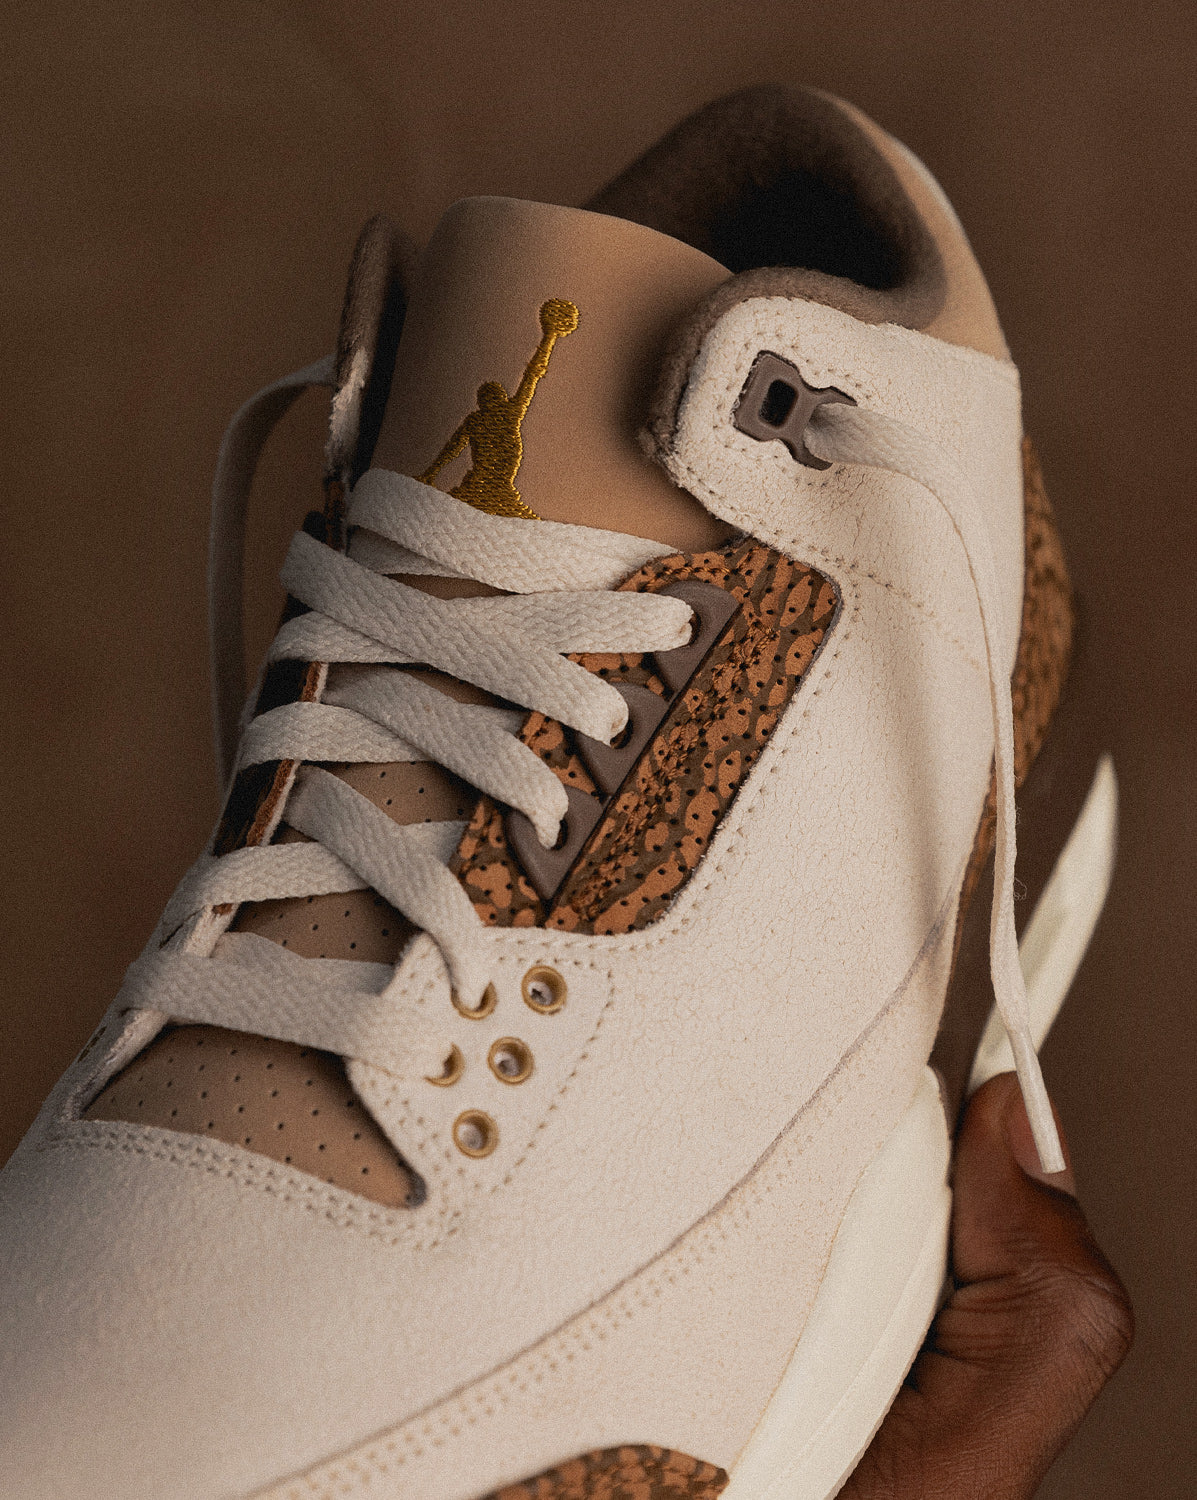 Nike Air Jordan 3 Retro *Palomino* » Buy online now!